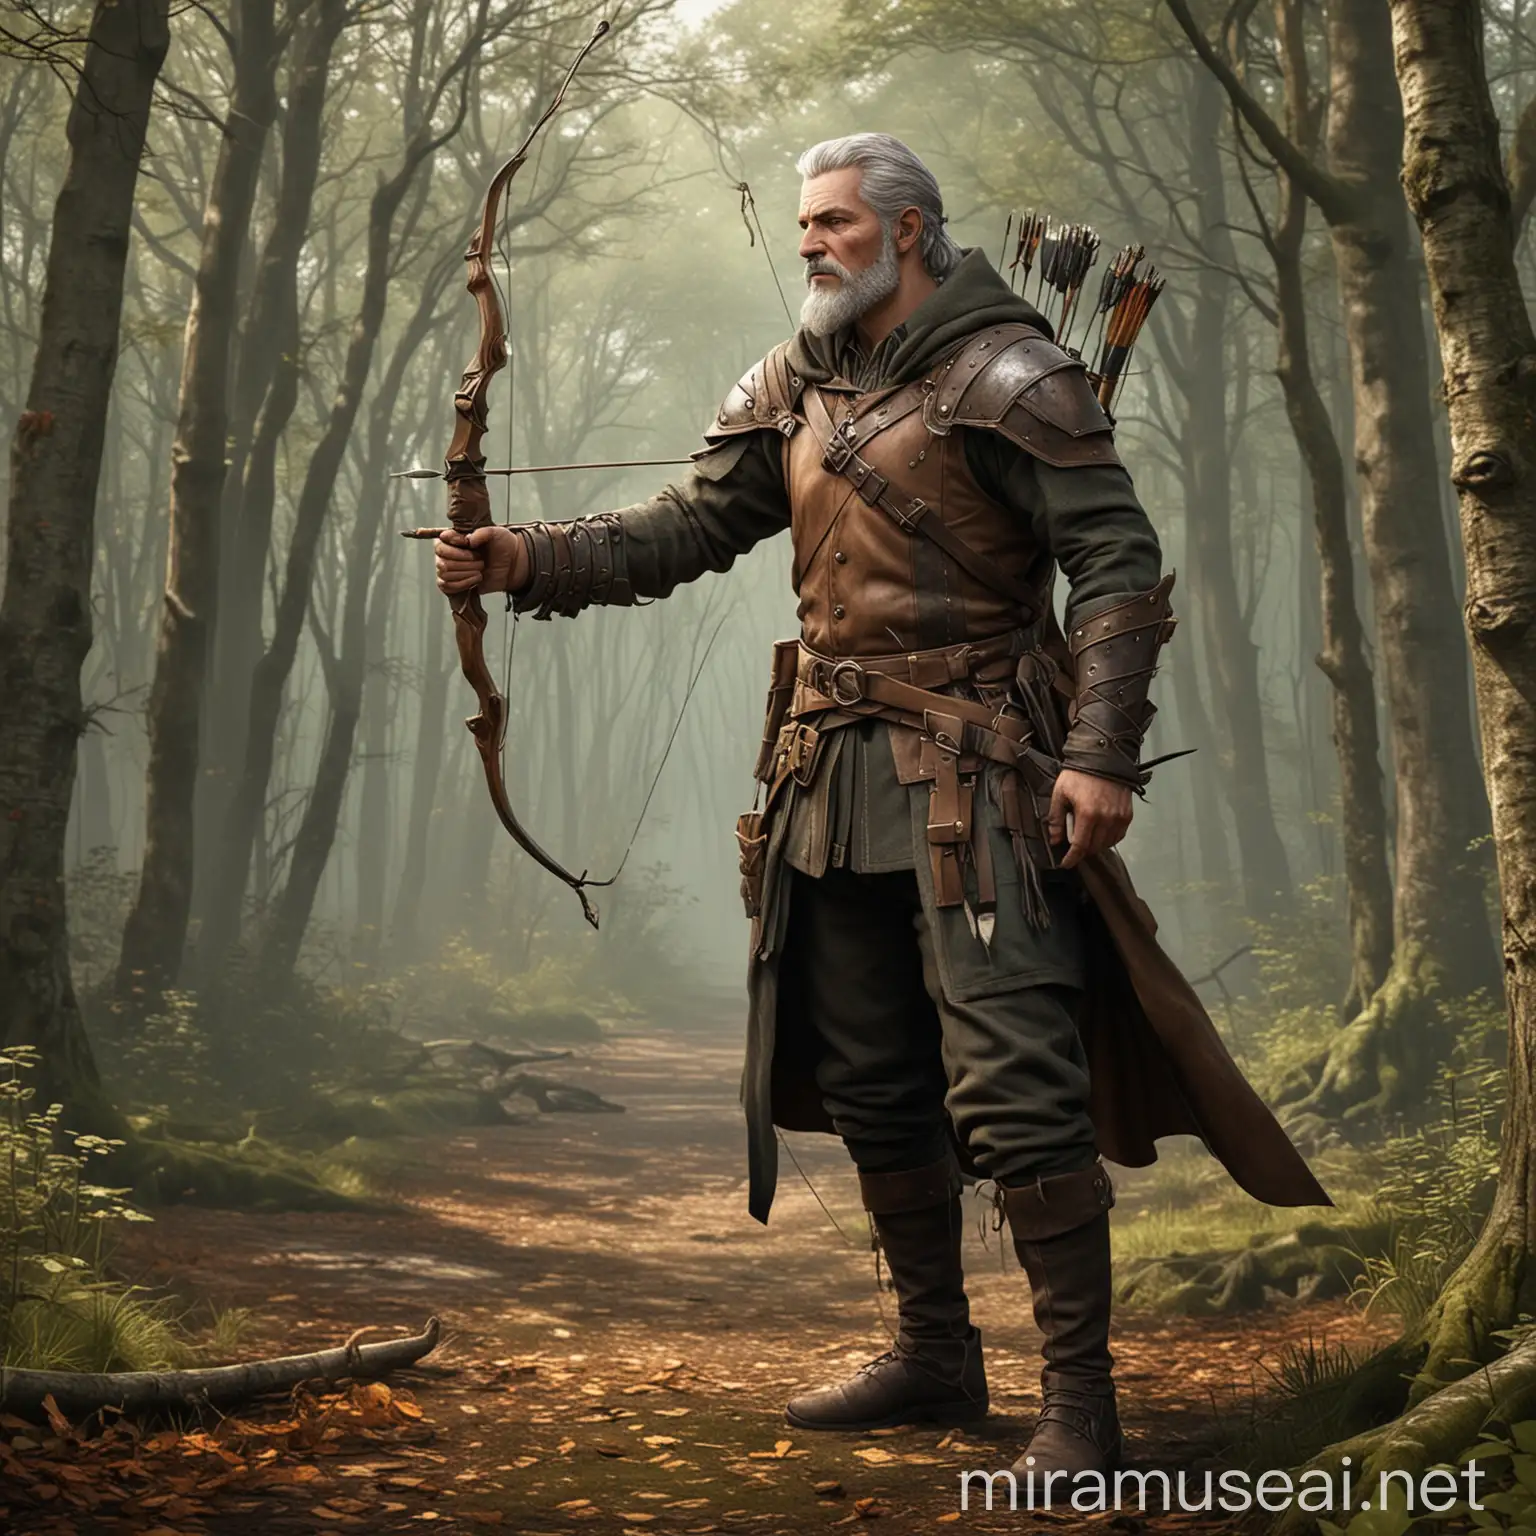 Skilled Archer in Woodlands Older Former Brigand Character Portrait